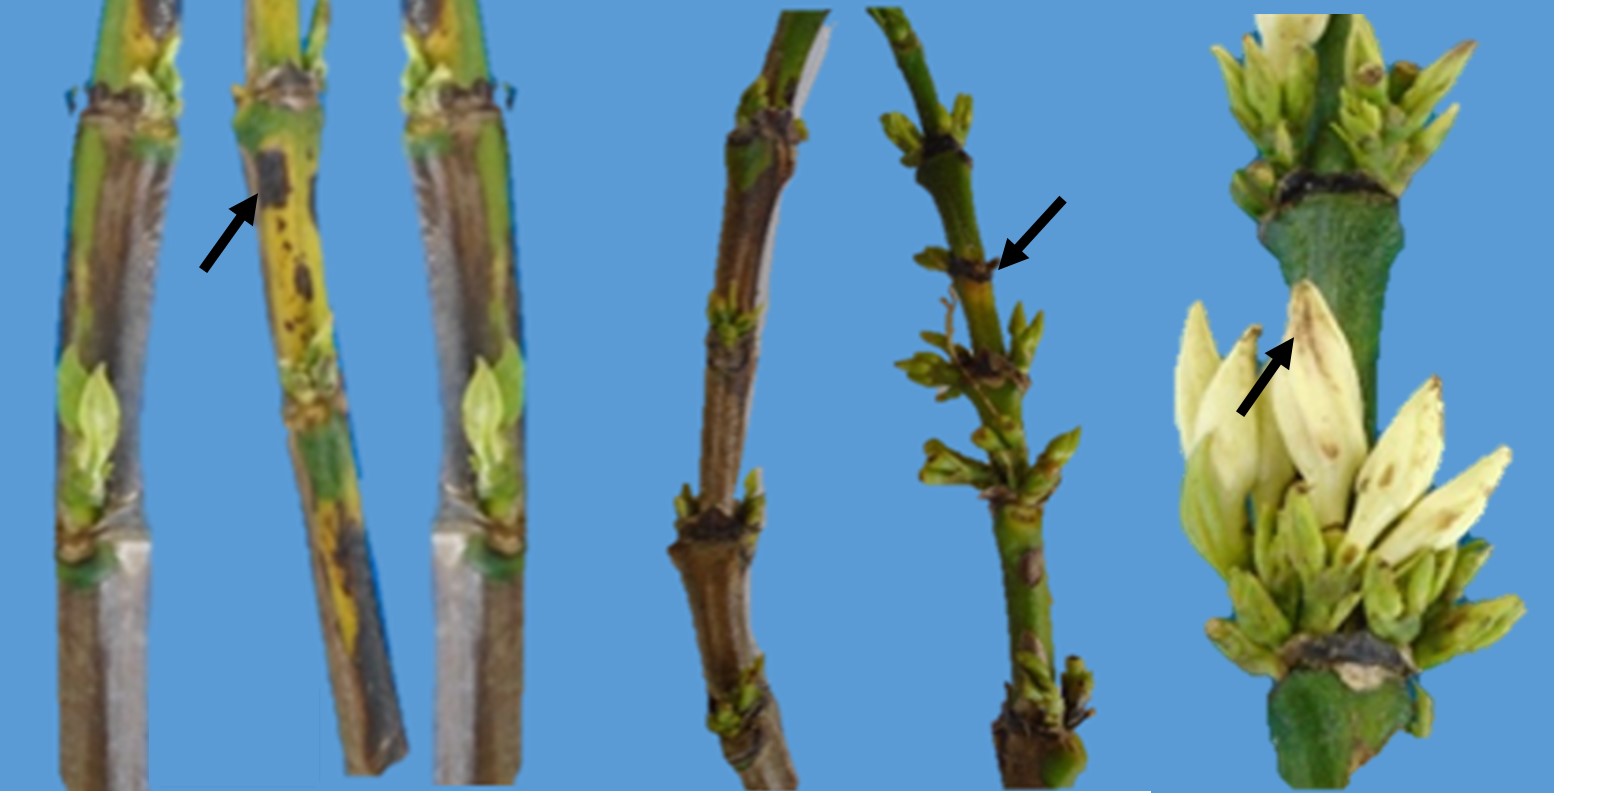 Síntomas de manchas necróticas de color pardo-oscuro,
de forma y tamaño irregular,  

causados por Pseudomonas
spp en bandolas y flores de Café.